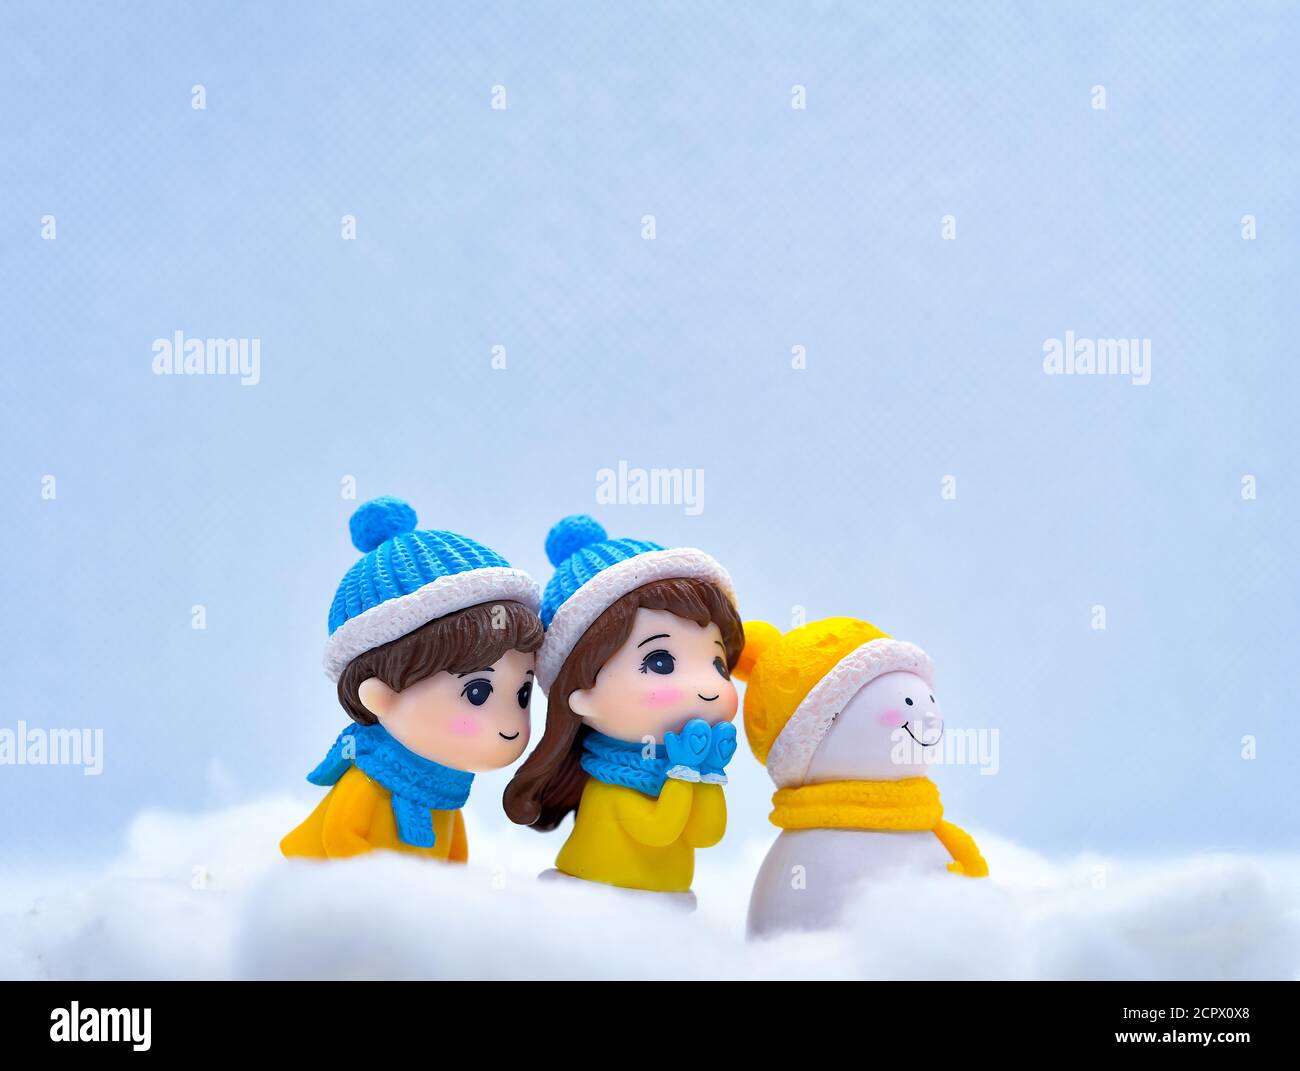 Tourisme et Voyage concept: Les personnes miniatures à la recherche de quelque chose dans la neige d'hiver avec peu de bonhomme de neige Banque D'Images